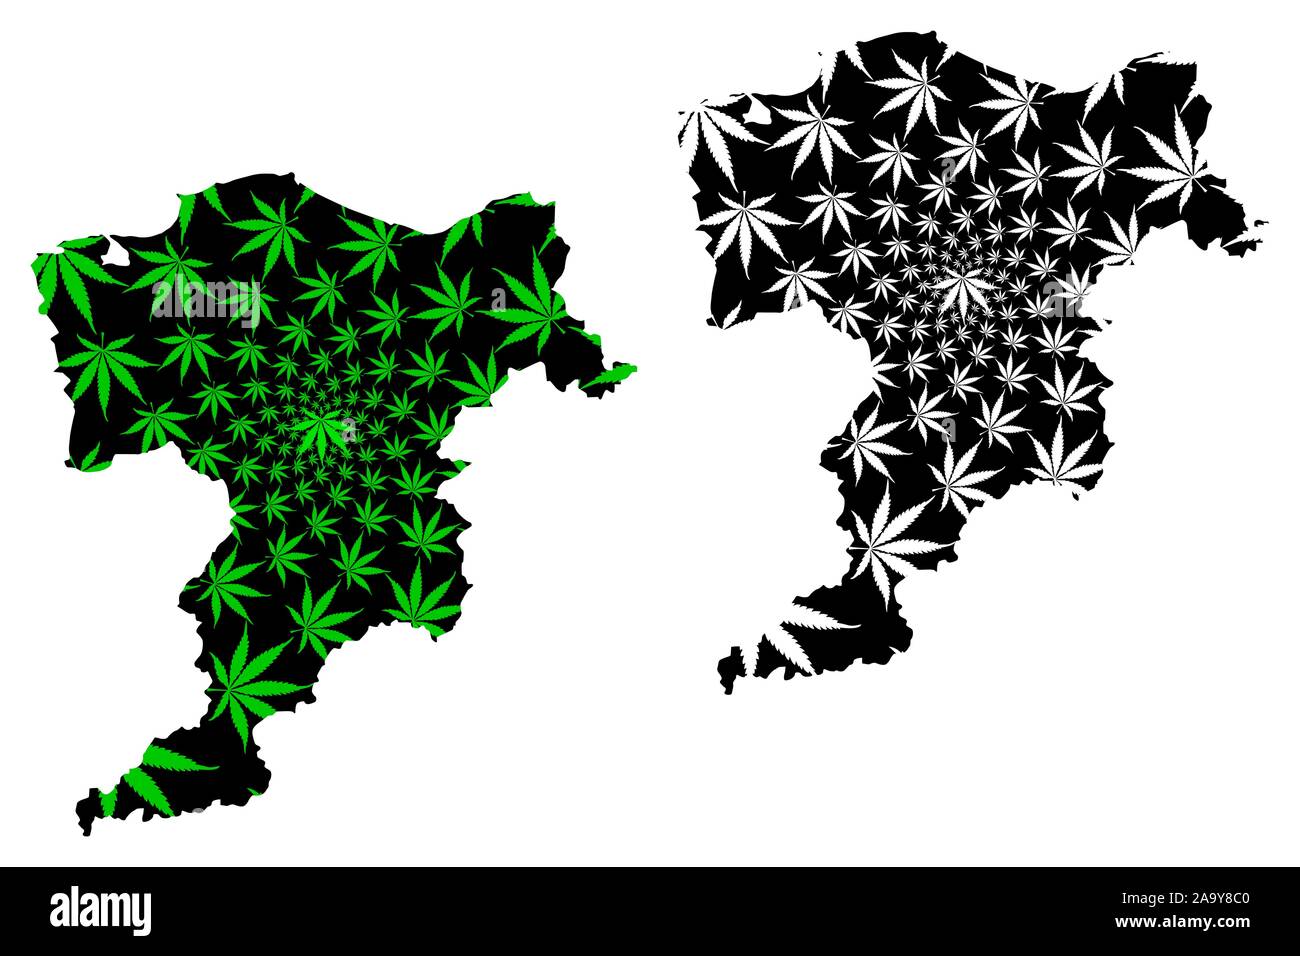 Moray (Regno Unito, Scozia, del governo locale in Scozia) mappa è progettato Cannabis leaf verde e nero, Moray mappa fatta di marijuana (marihuana,T Illustrazione Vettoriale